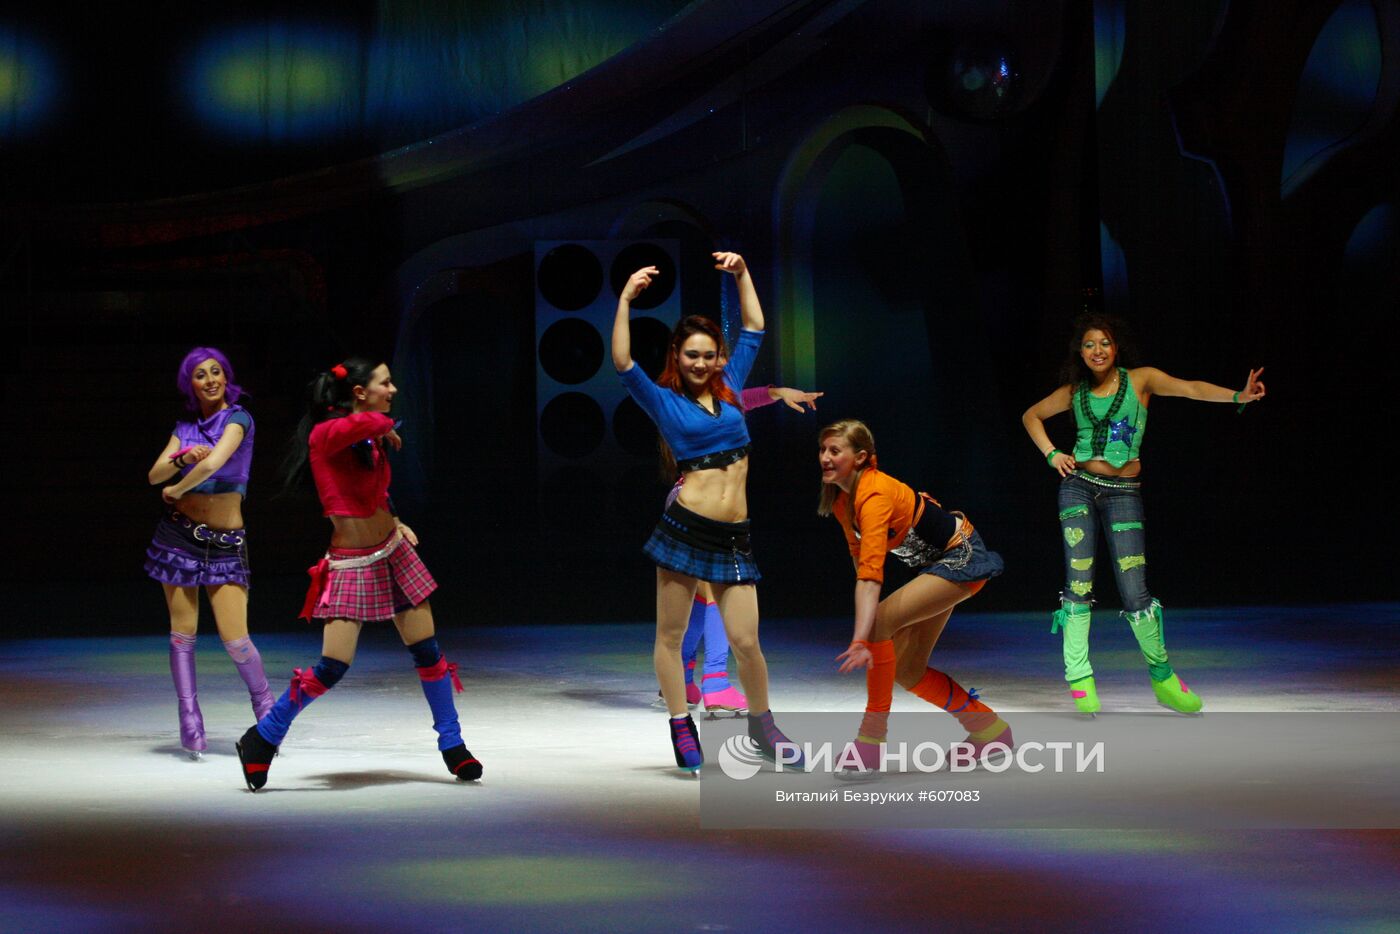 Ледовое шоу Winx on Ice в постановке Ильи Авербуха